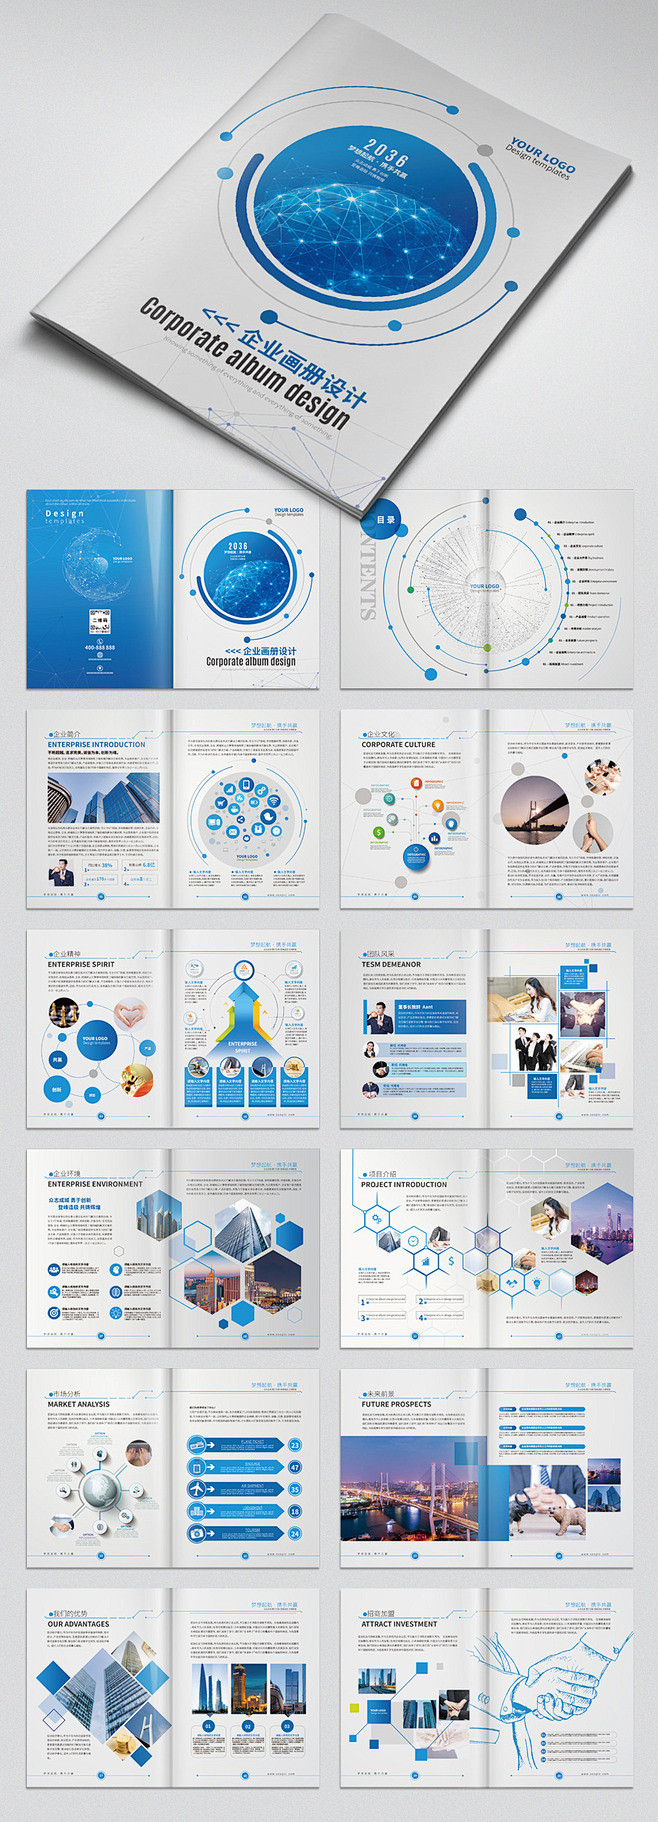 蓝色科技公司画册企业宣传画册设计模板